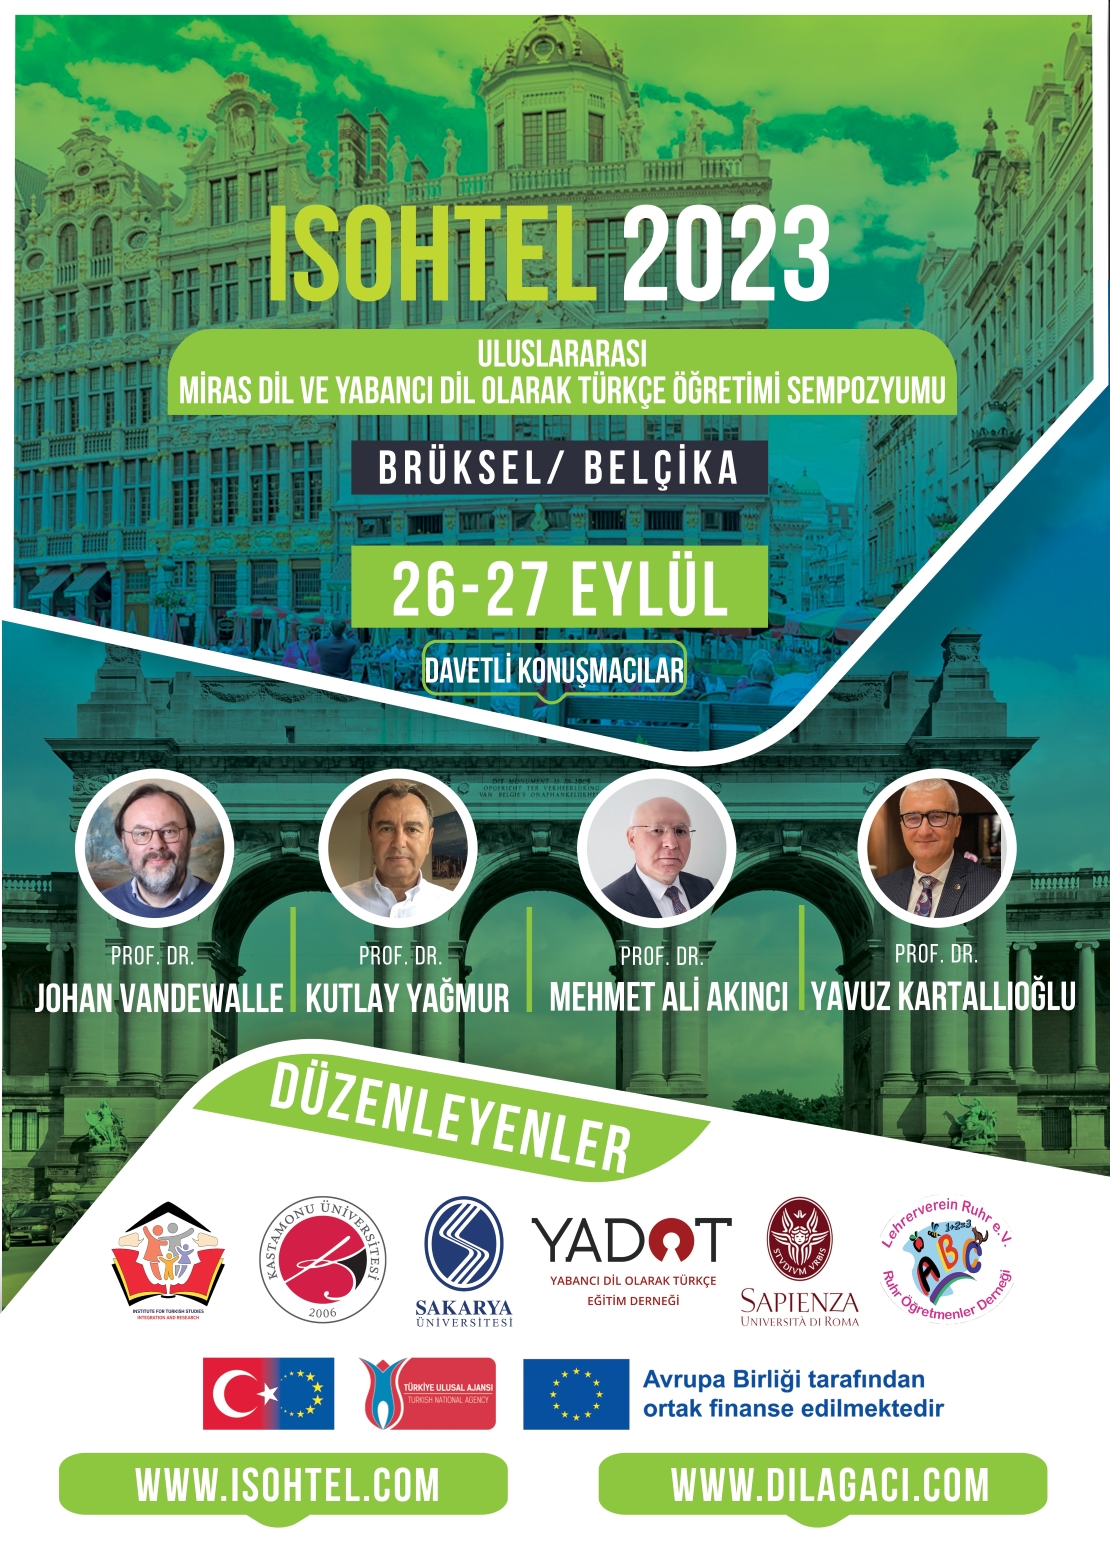 Uluslararası Miras Dil ve Yabancı Dil Olarak Türkçe Öğretimi Sempozyumu (26-27 Eylül 2023)